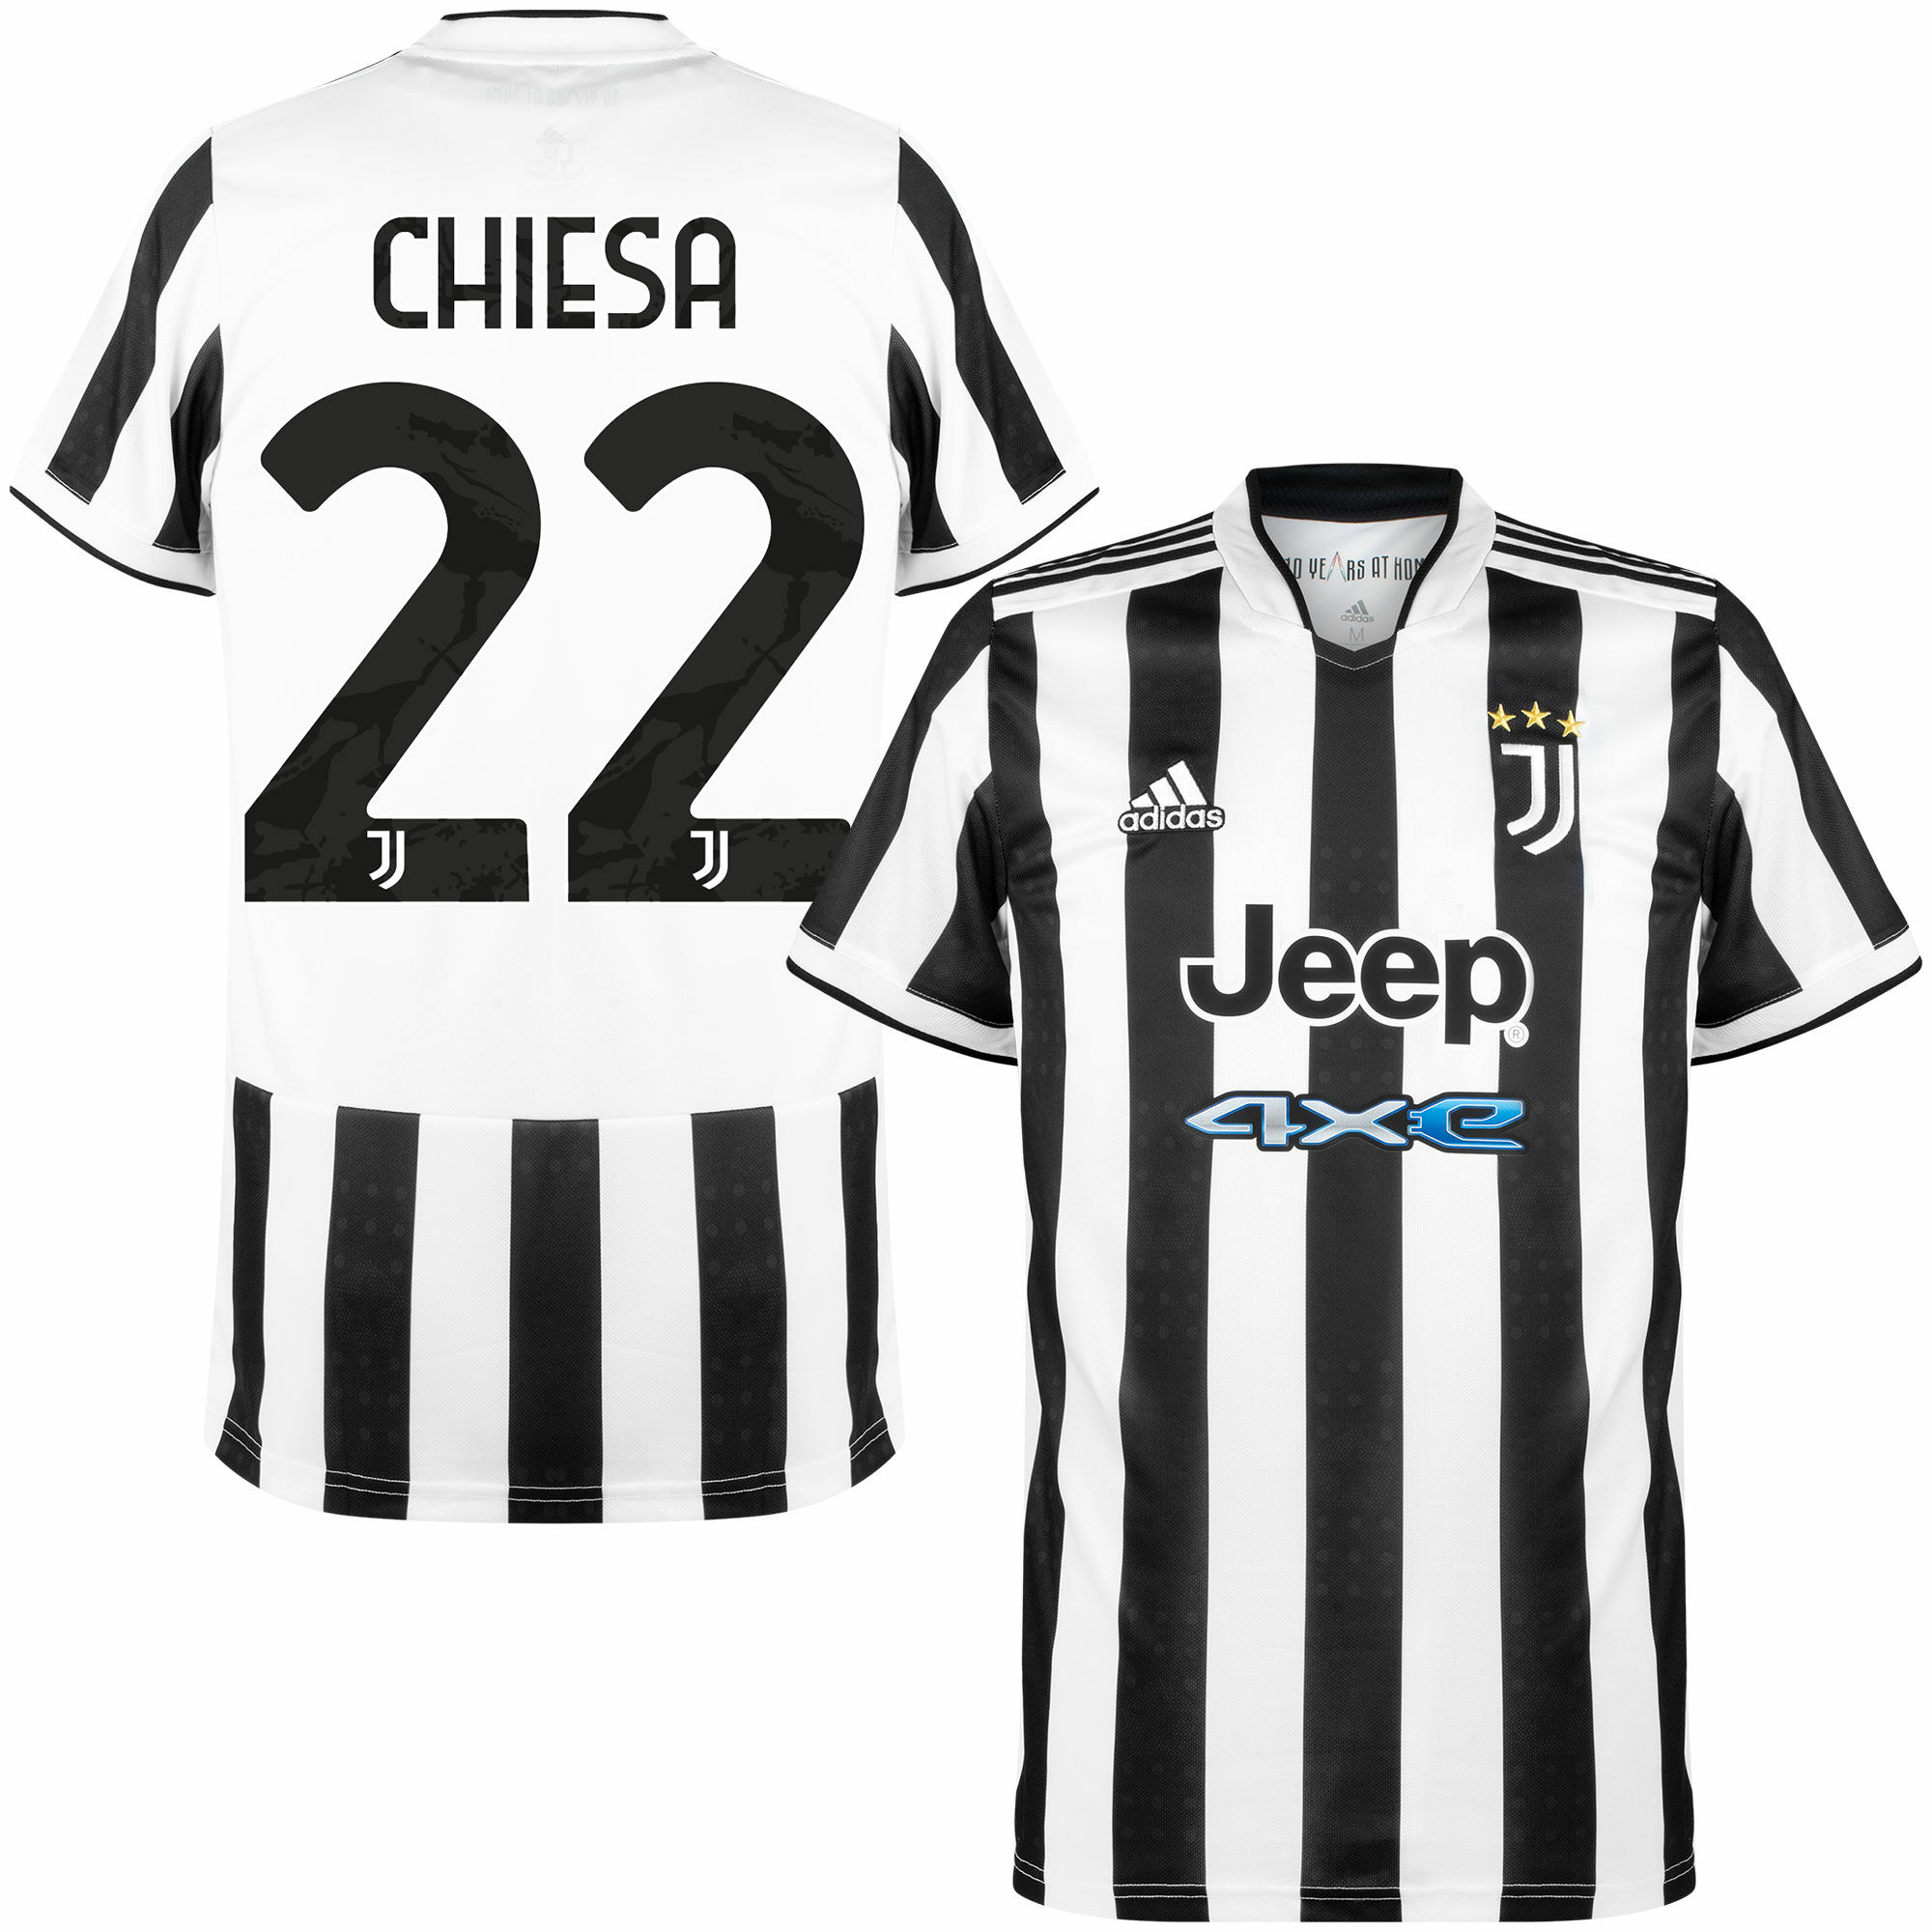 Juventus FC - Dres fotbalový - sezóna 2021/22, oficiální potisk, černý, číslo 22, domácí, Federico Chiesa